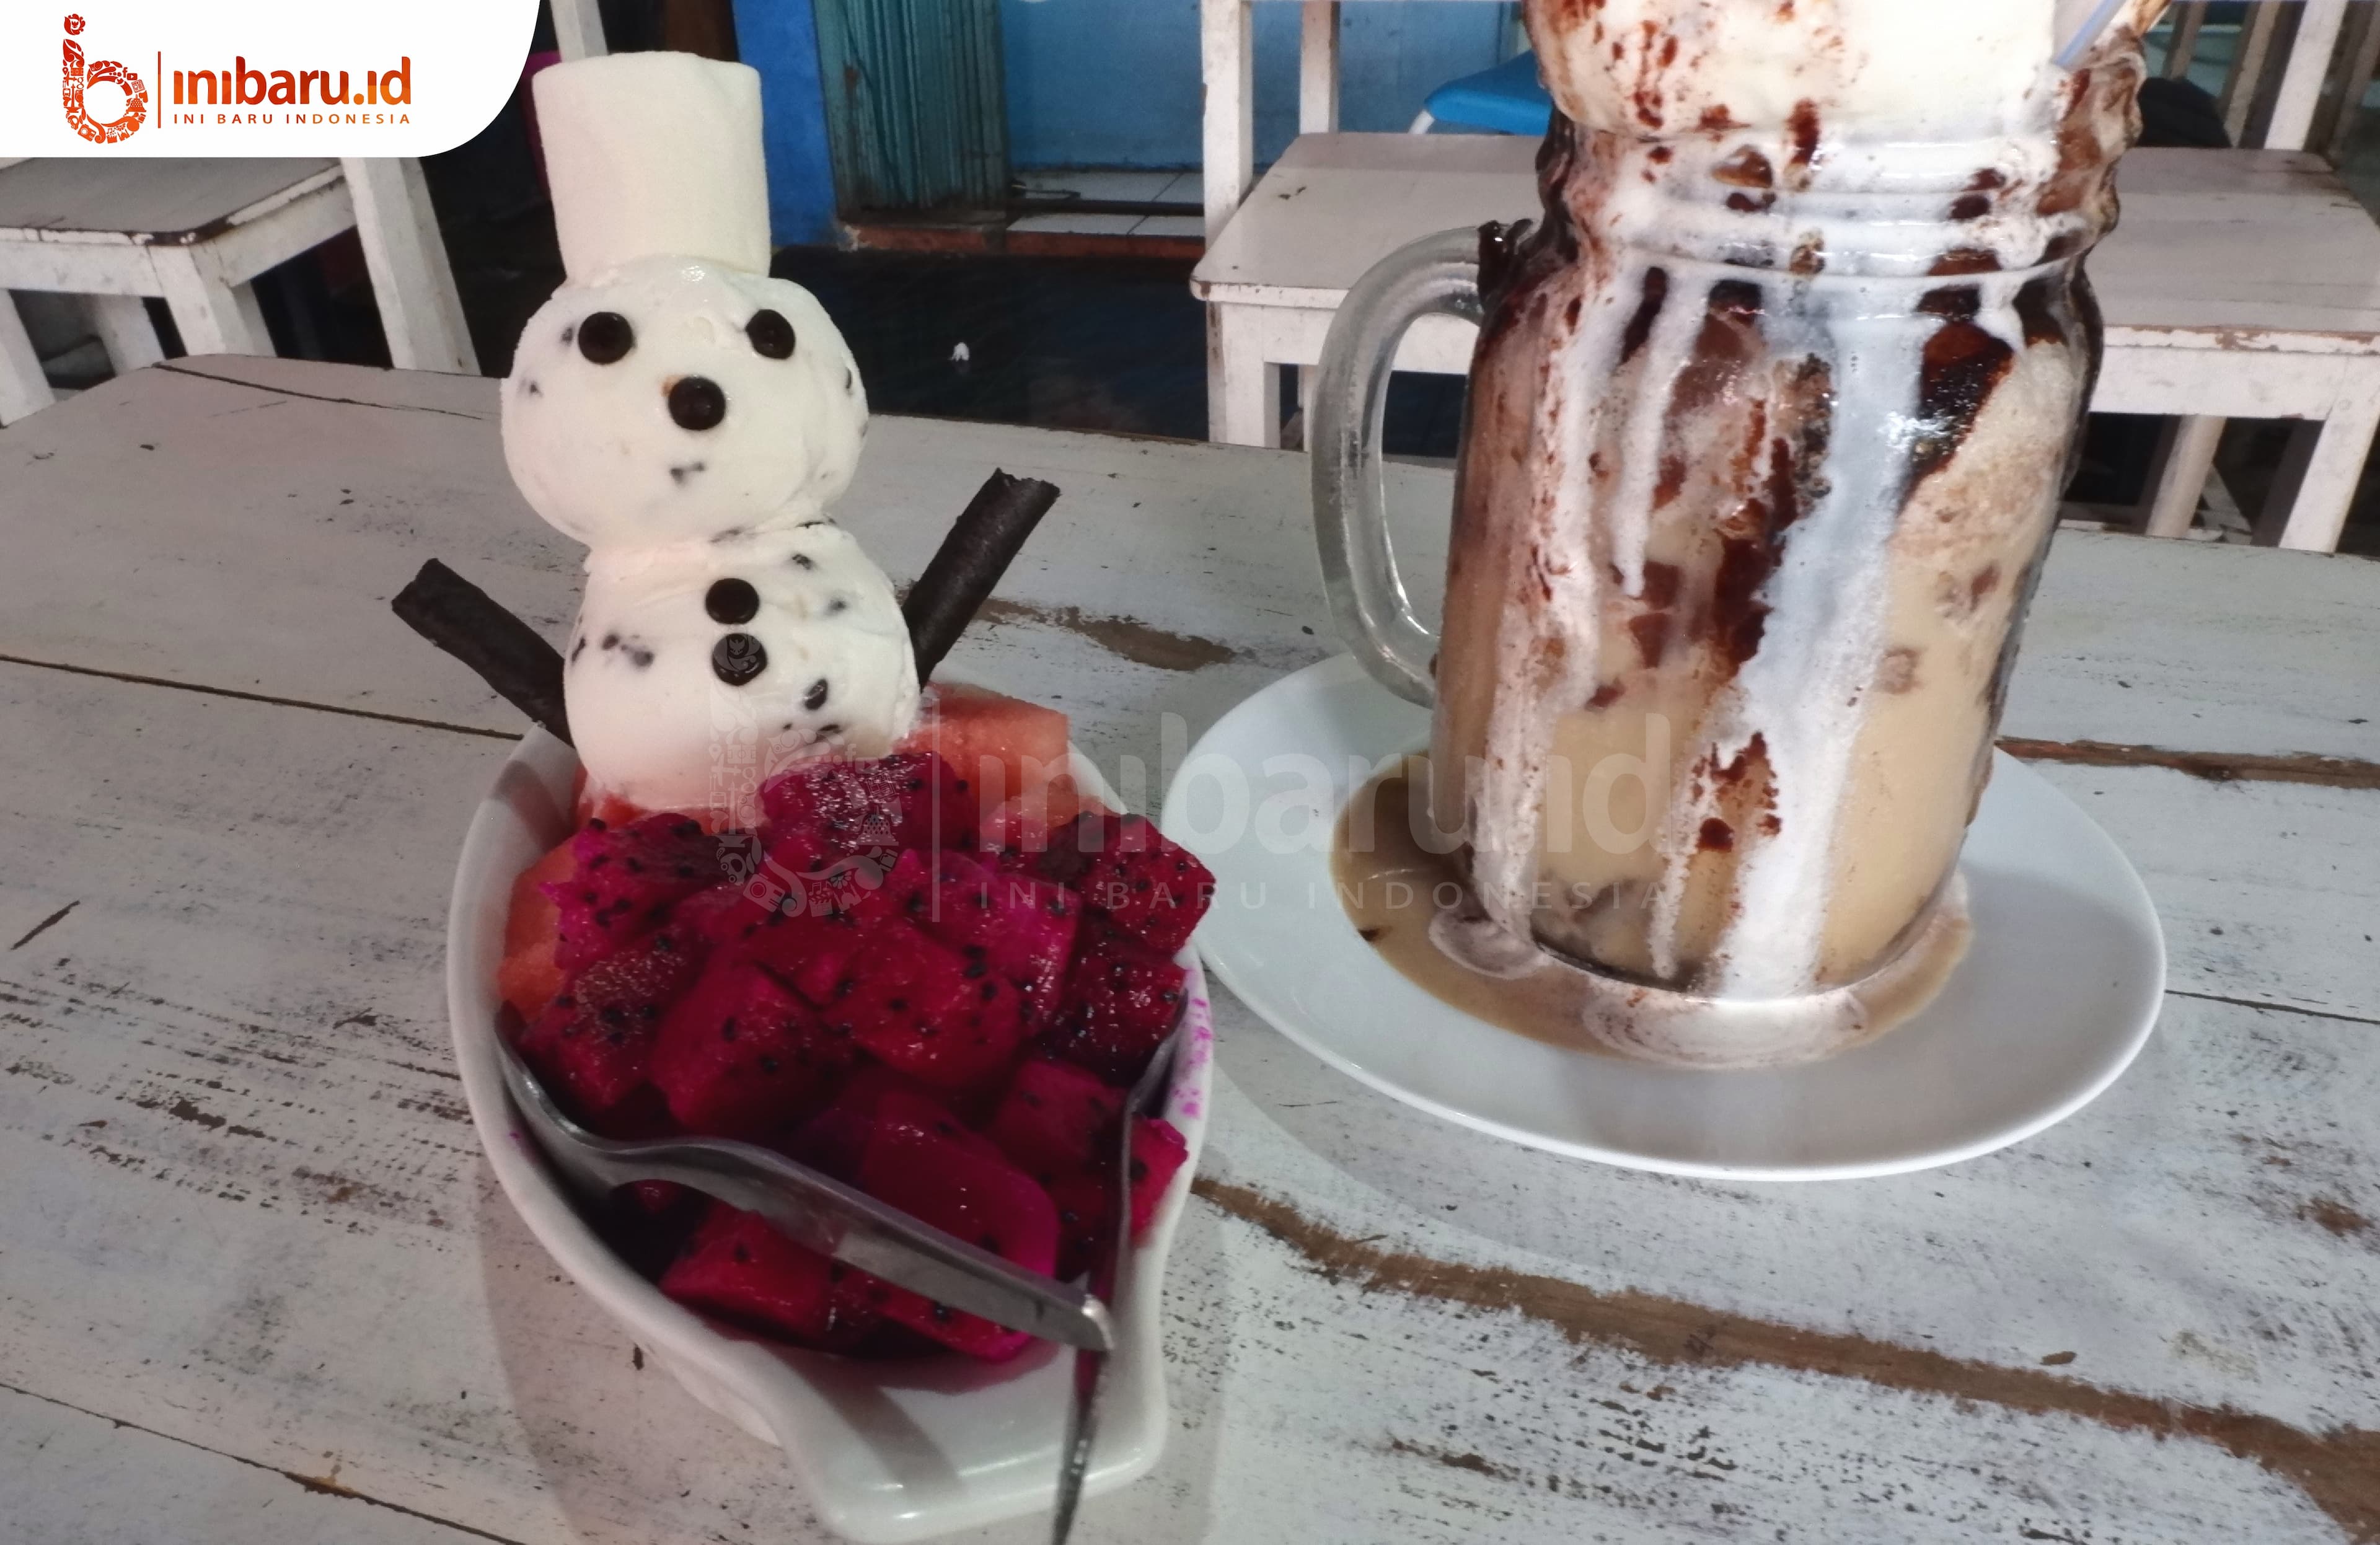 Varian es krim di kedai Bakoel Eskrim. (Putri Rachmawati/Inibaru.id)